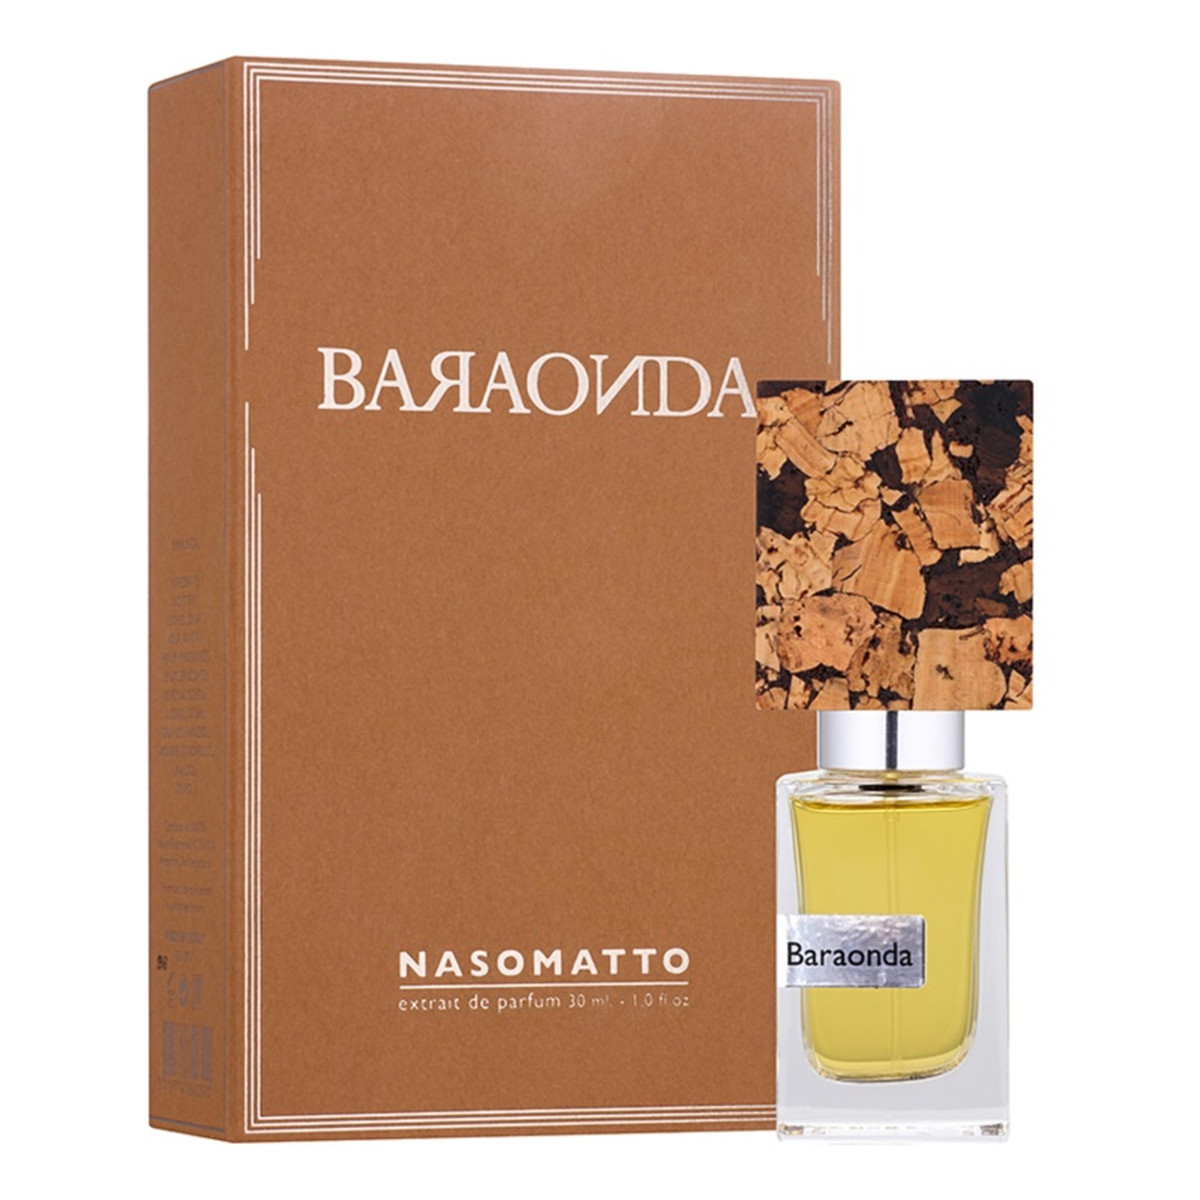 Nasomatto Baraonda woda perfumowana 30ml